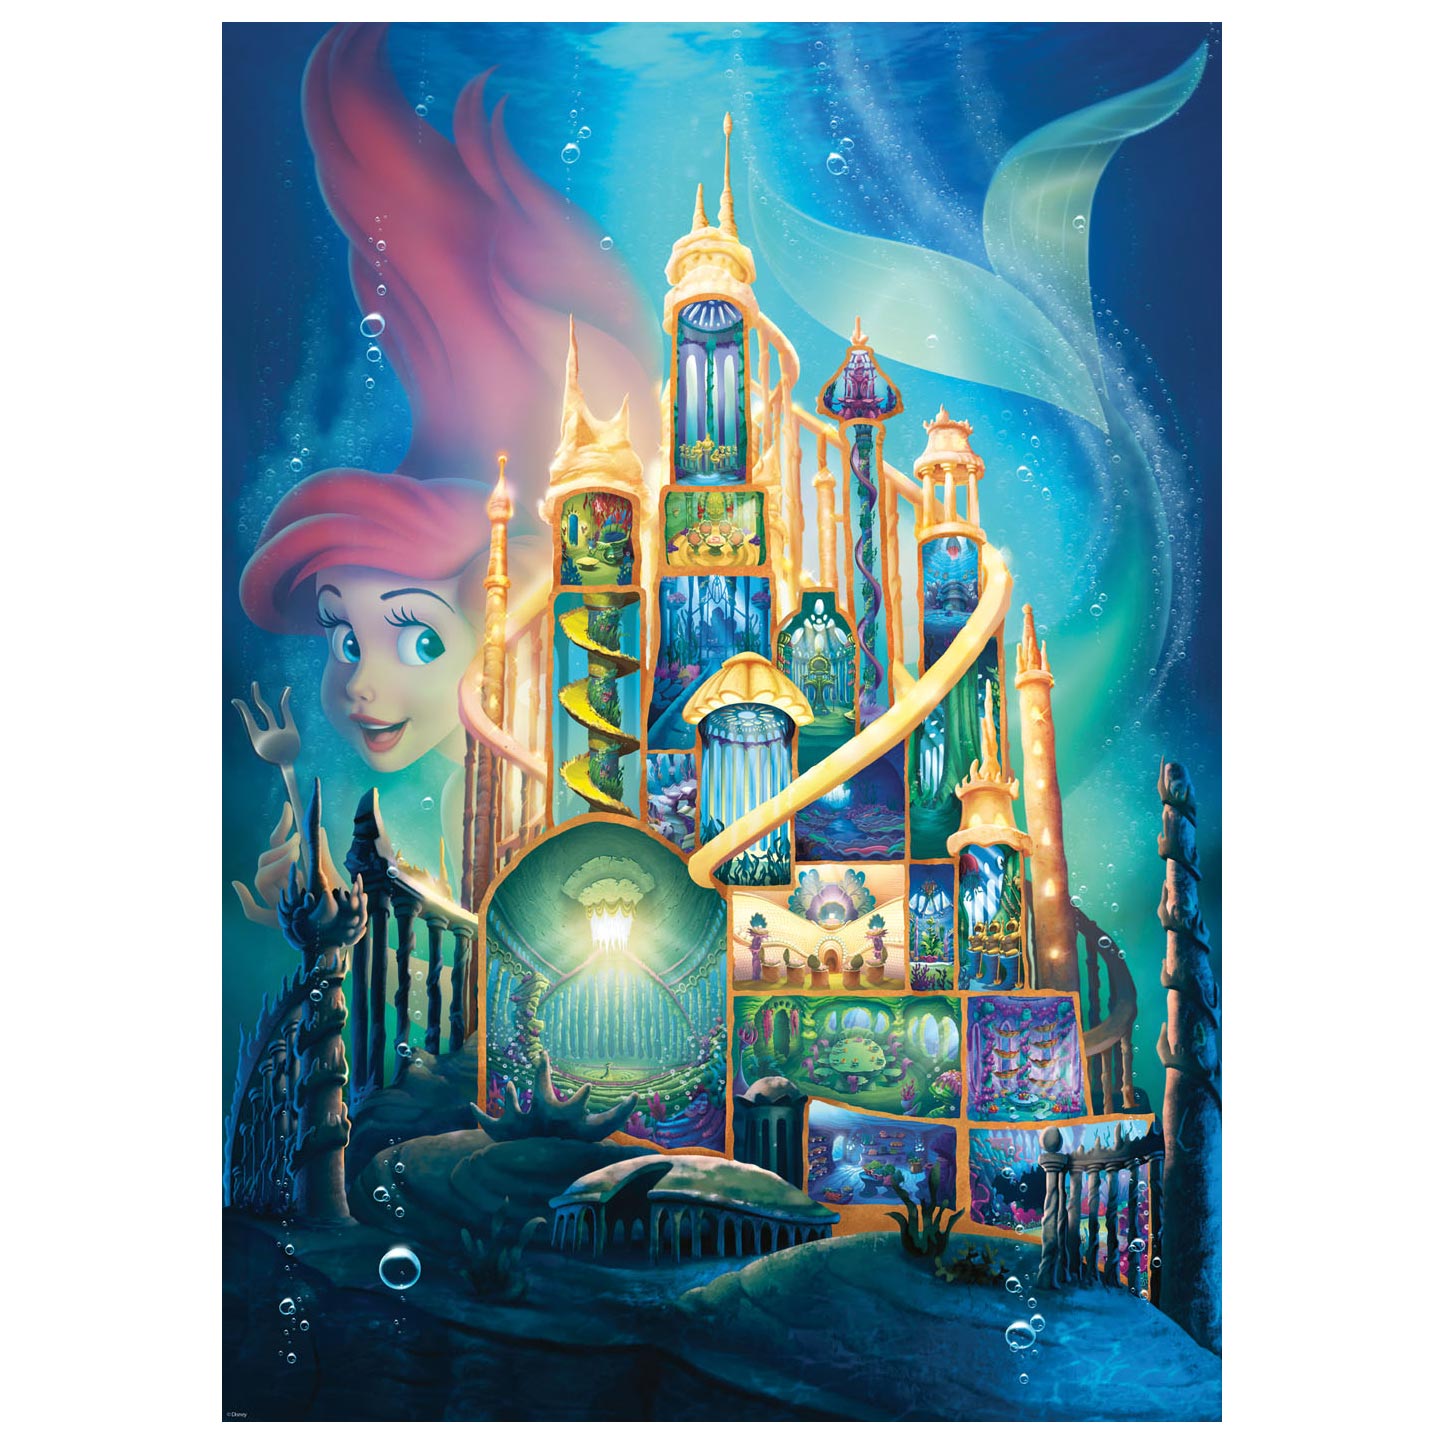 Ravensburger Puzzle Châteaux Disney - Ariel, 1000pcs.